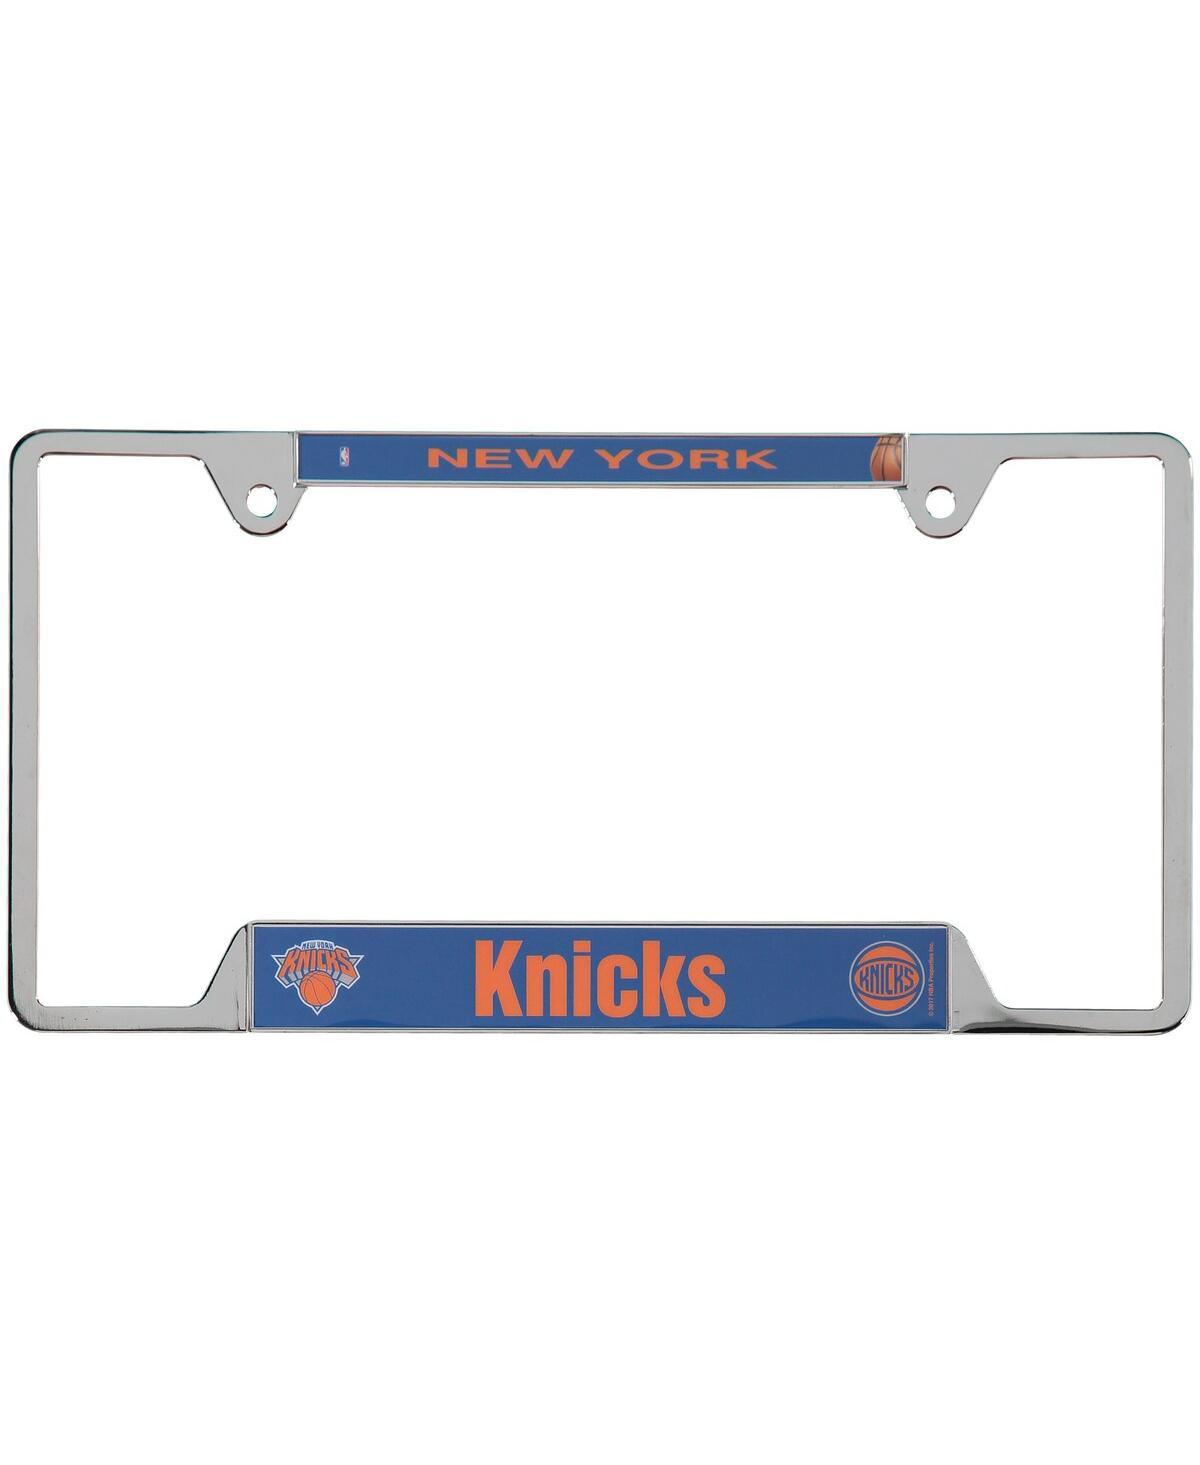 New York Knicks License Plate Frame - Multi